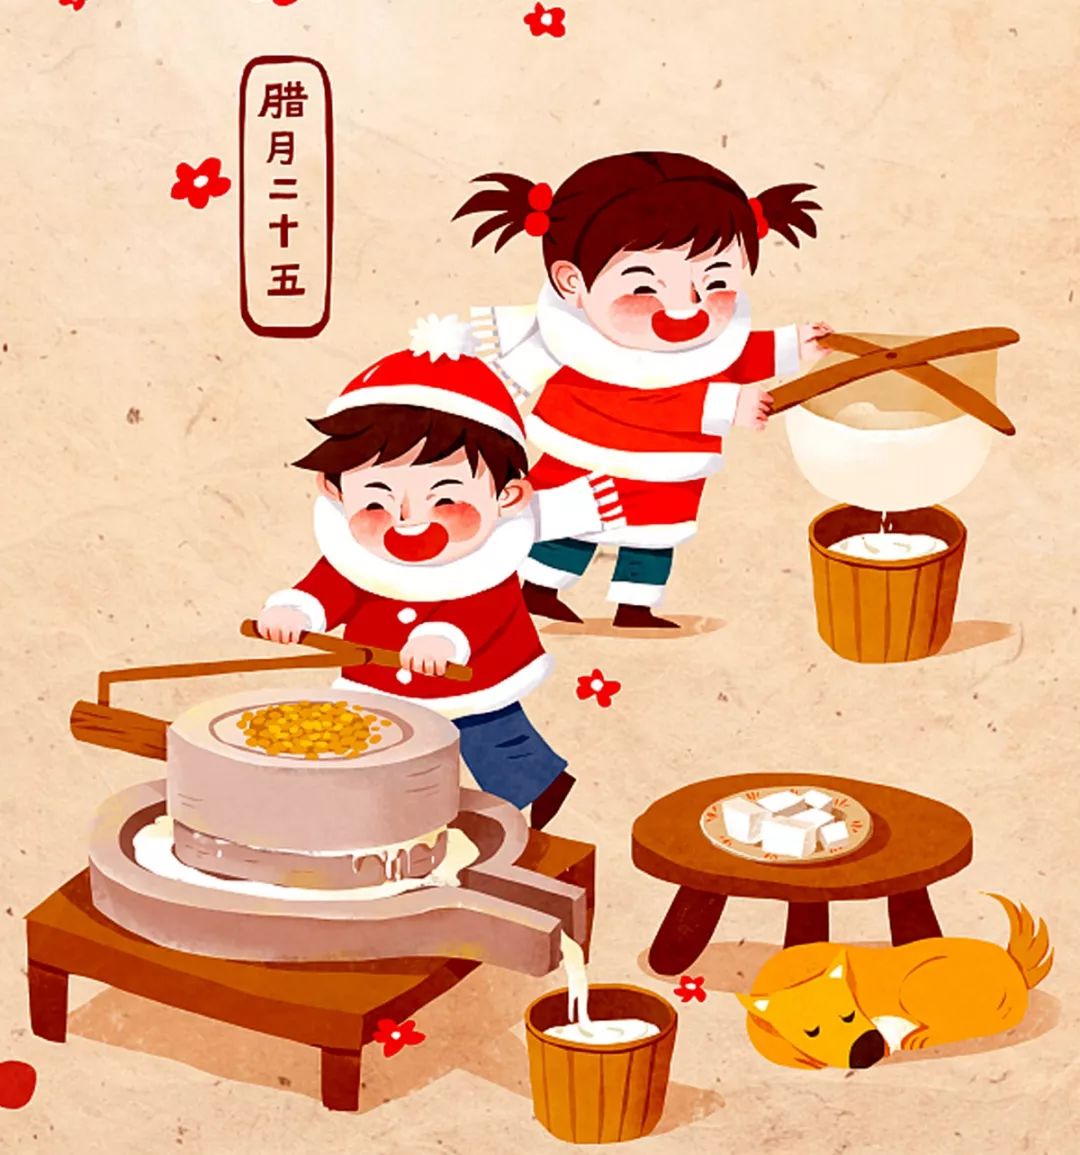 年在河北 | 二十五磨豆腐,河北人过春节少不了这一碗古月豆腐!